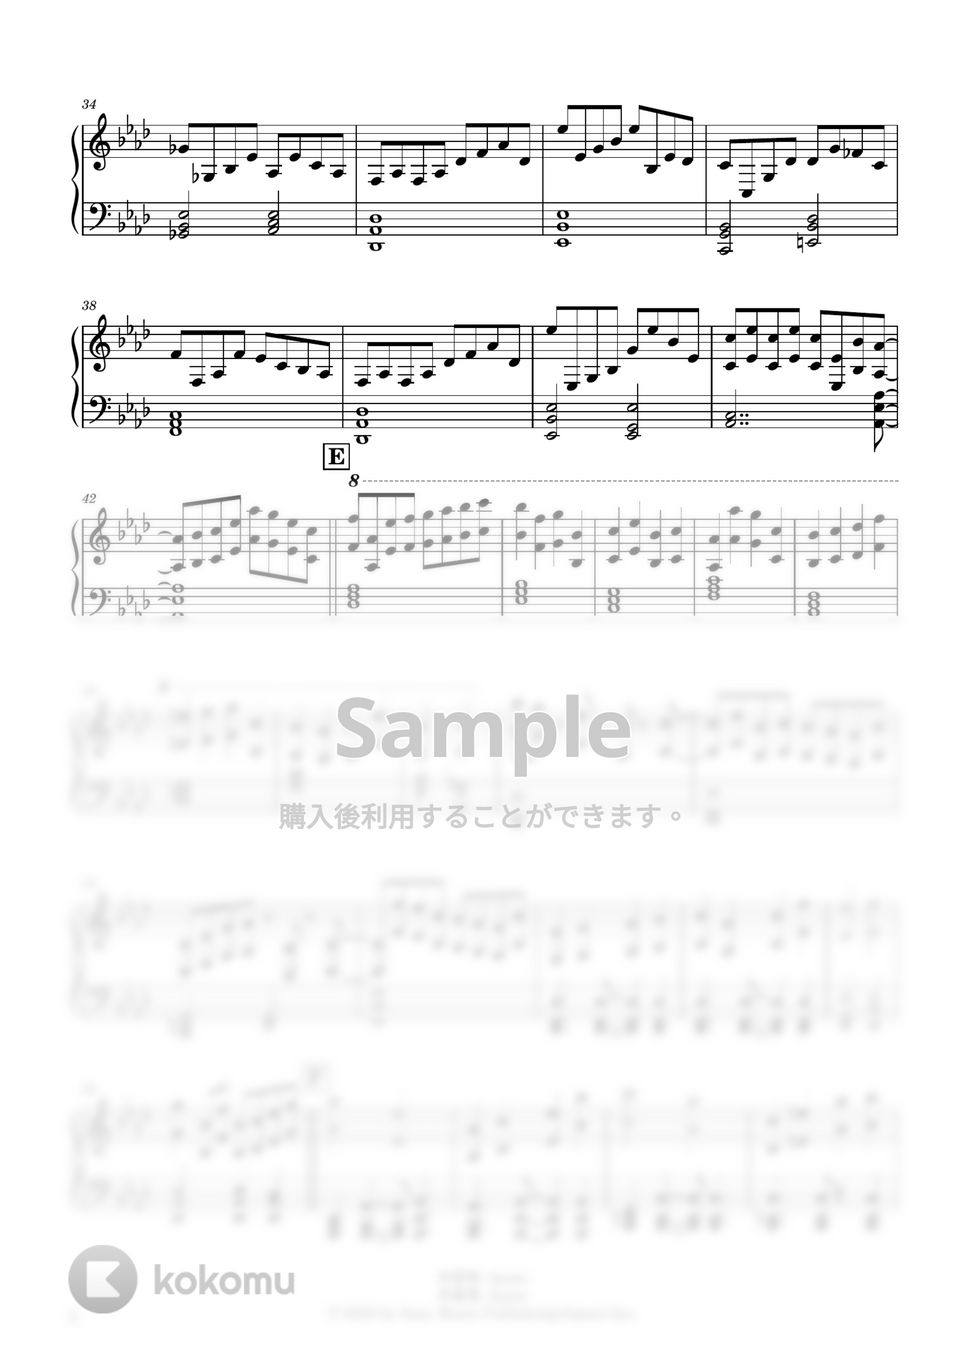 Ayase - あの夢をなぞって (ピアノパート譜) by Ray